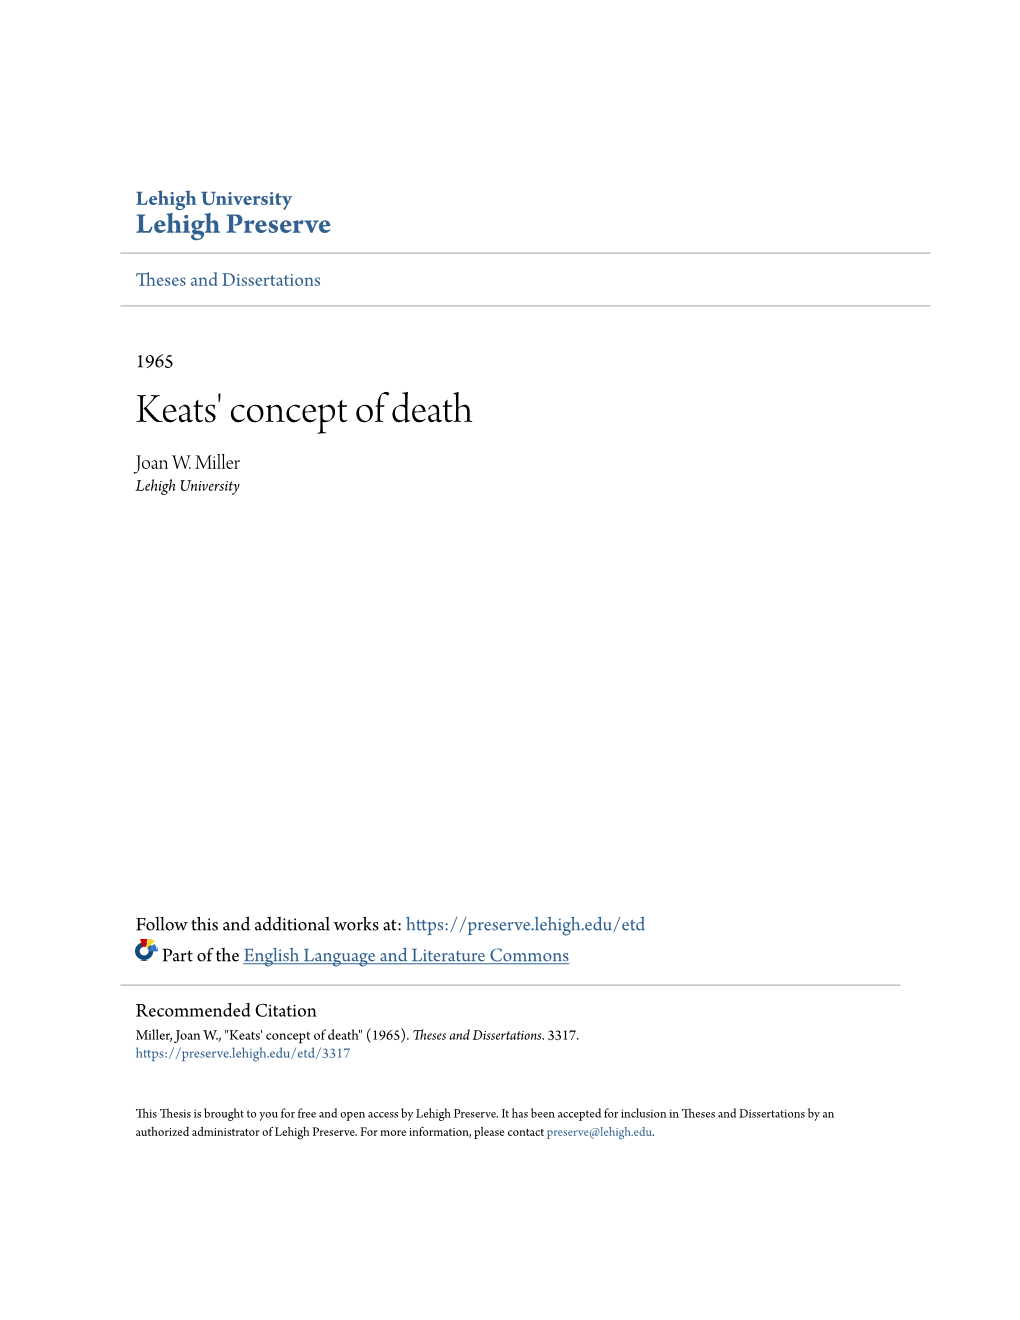 Keats' Concept of Death Joan W